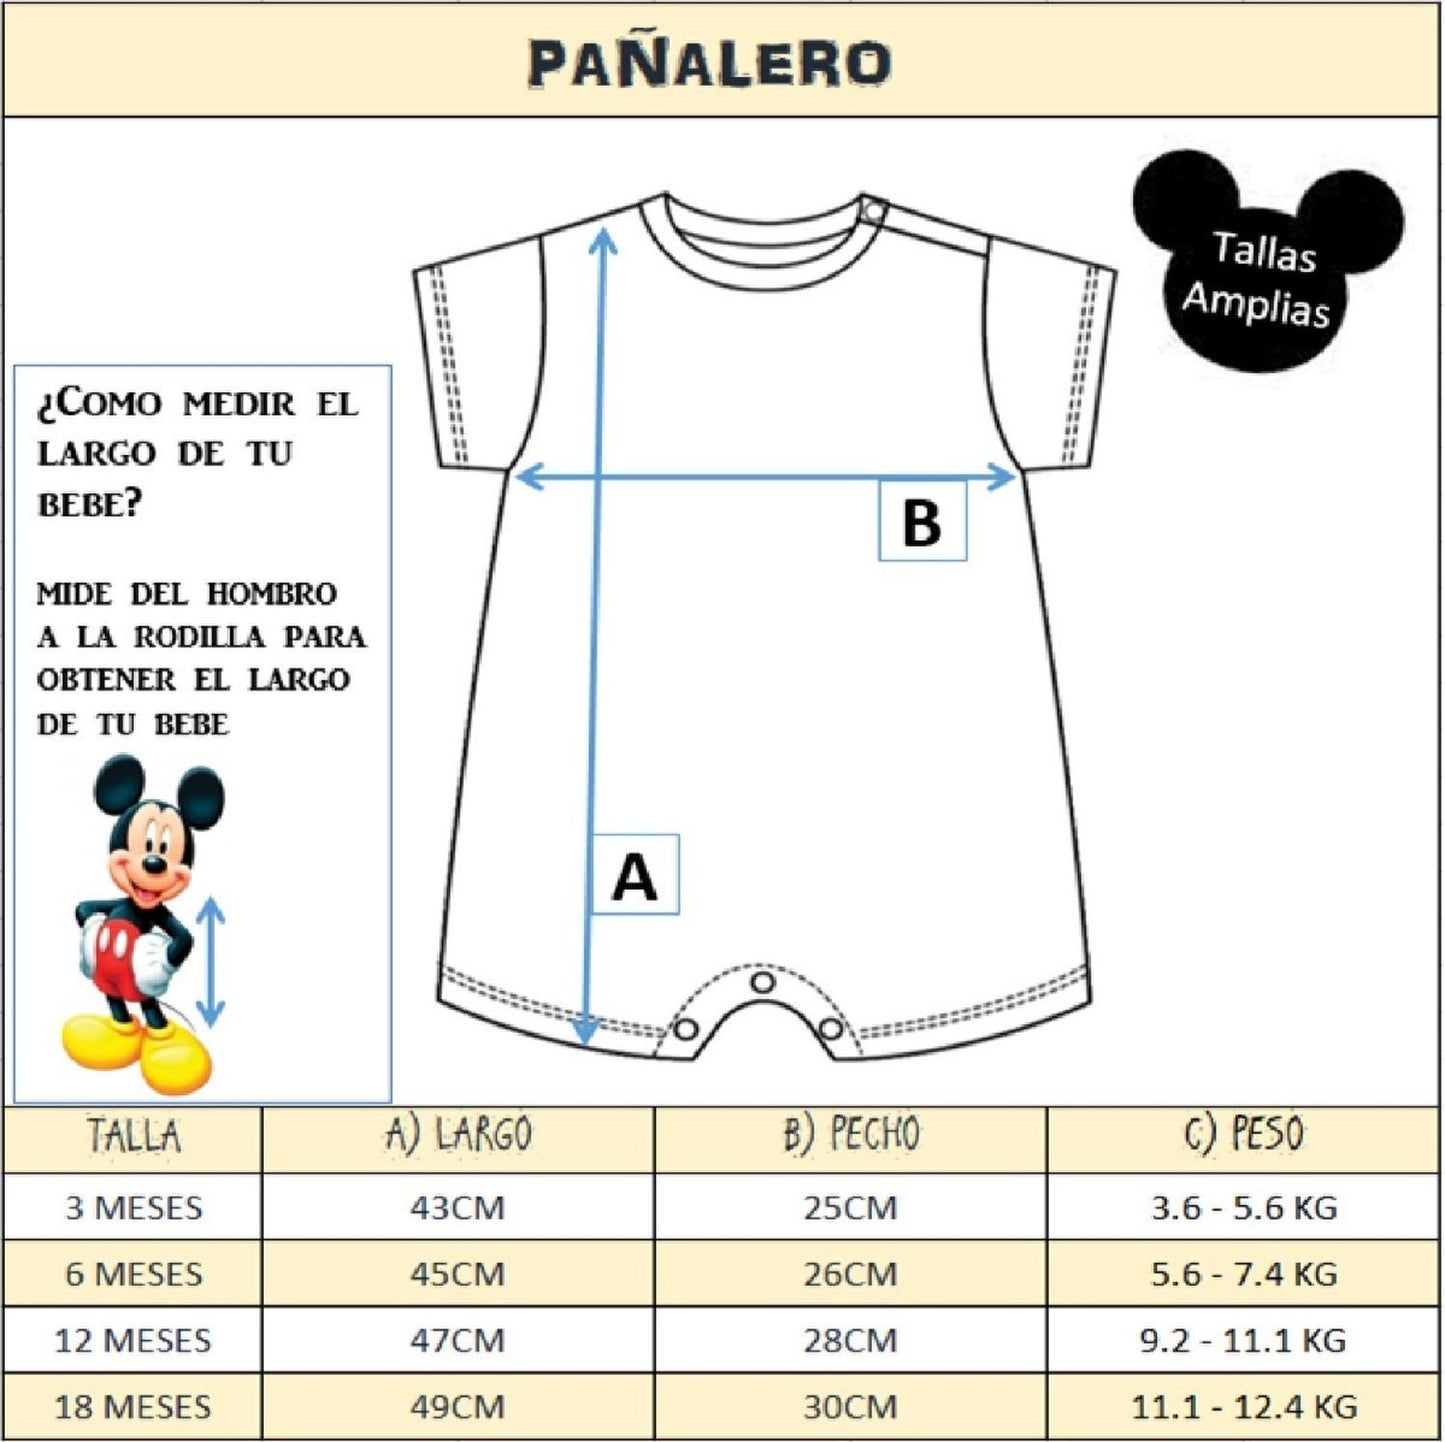 Kit 1 Pañalero Dumbo, 2 Vestidos Minnie Mouse